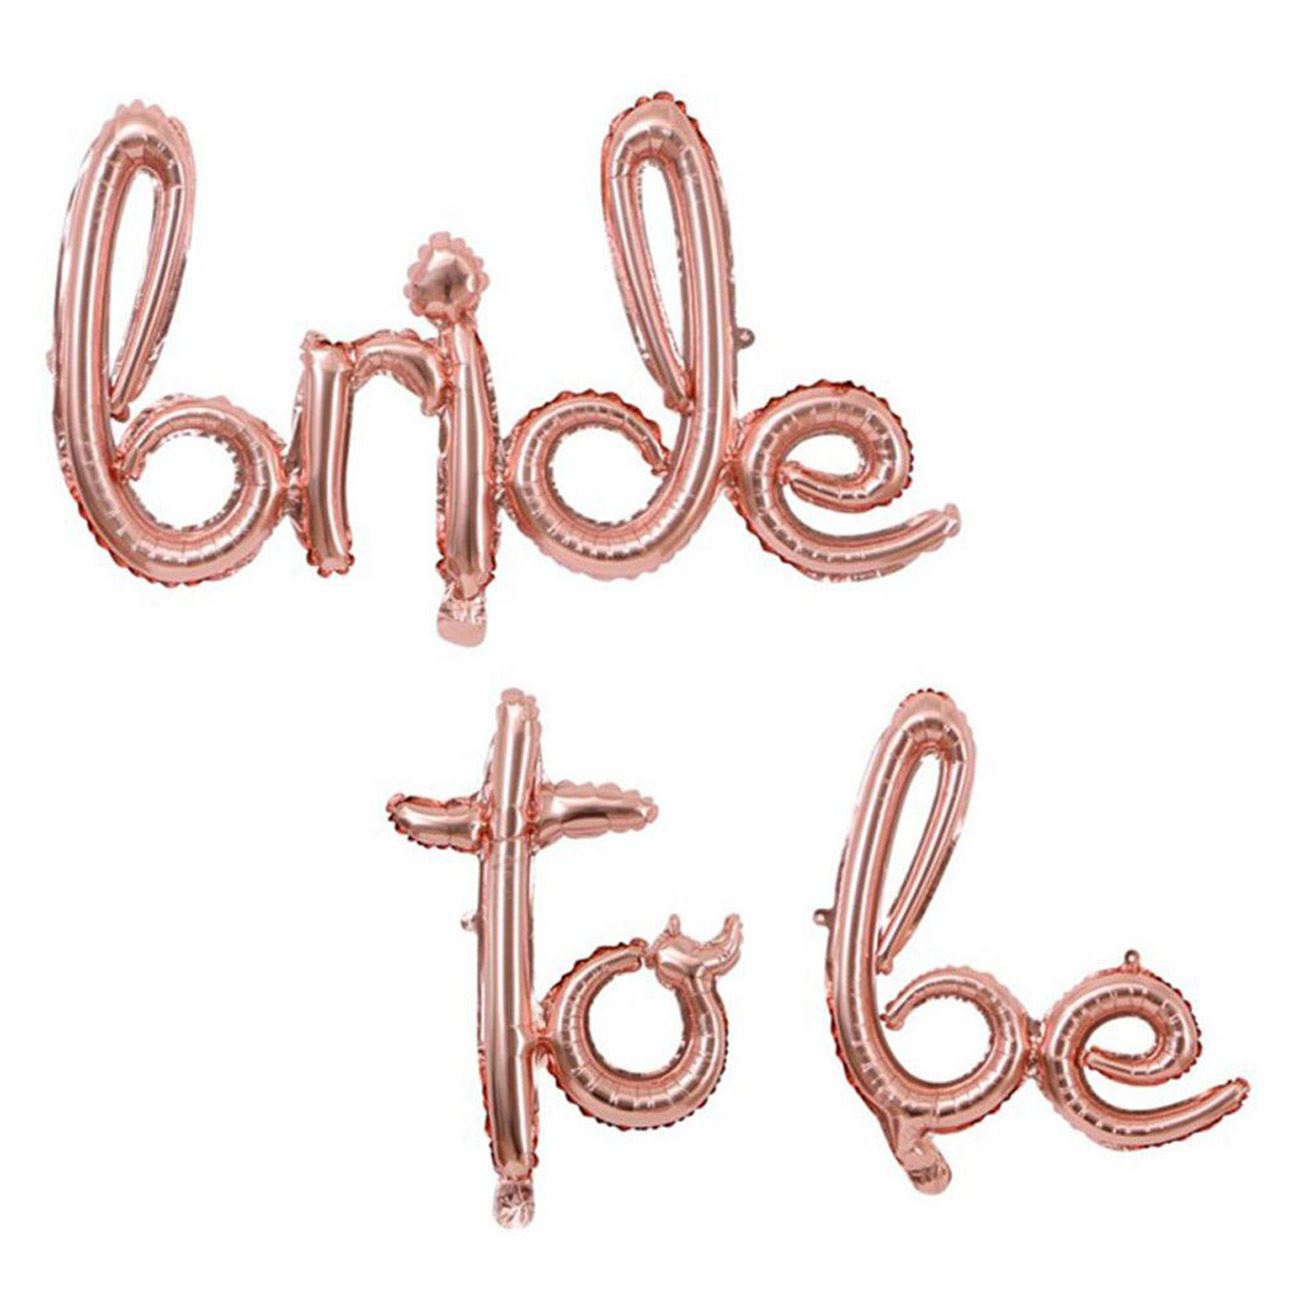 "Menyasszonynak lenni" ballon fólia